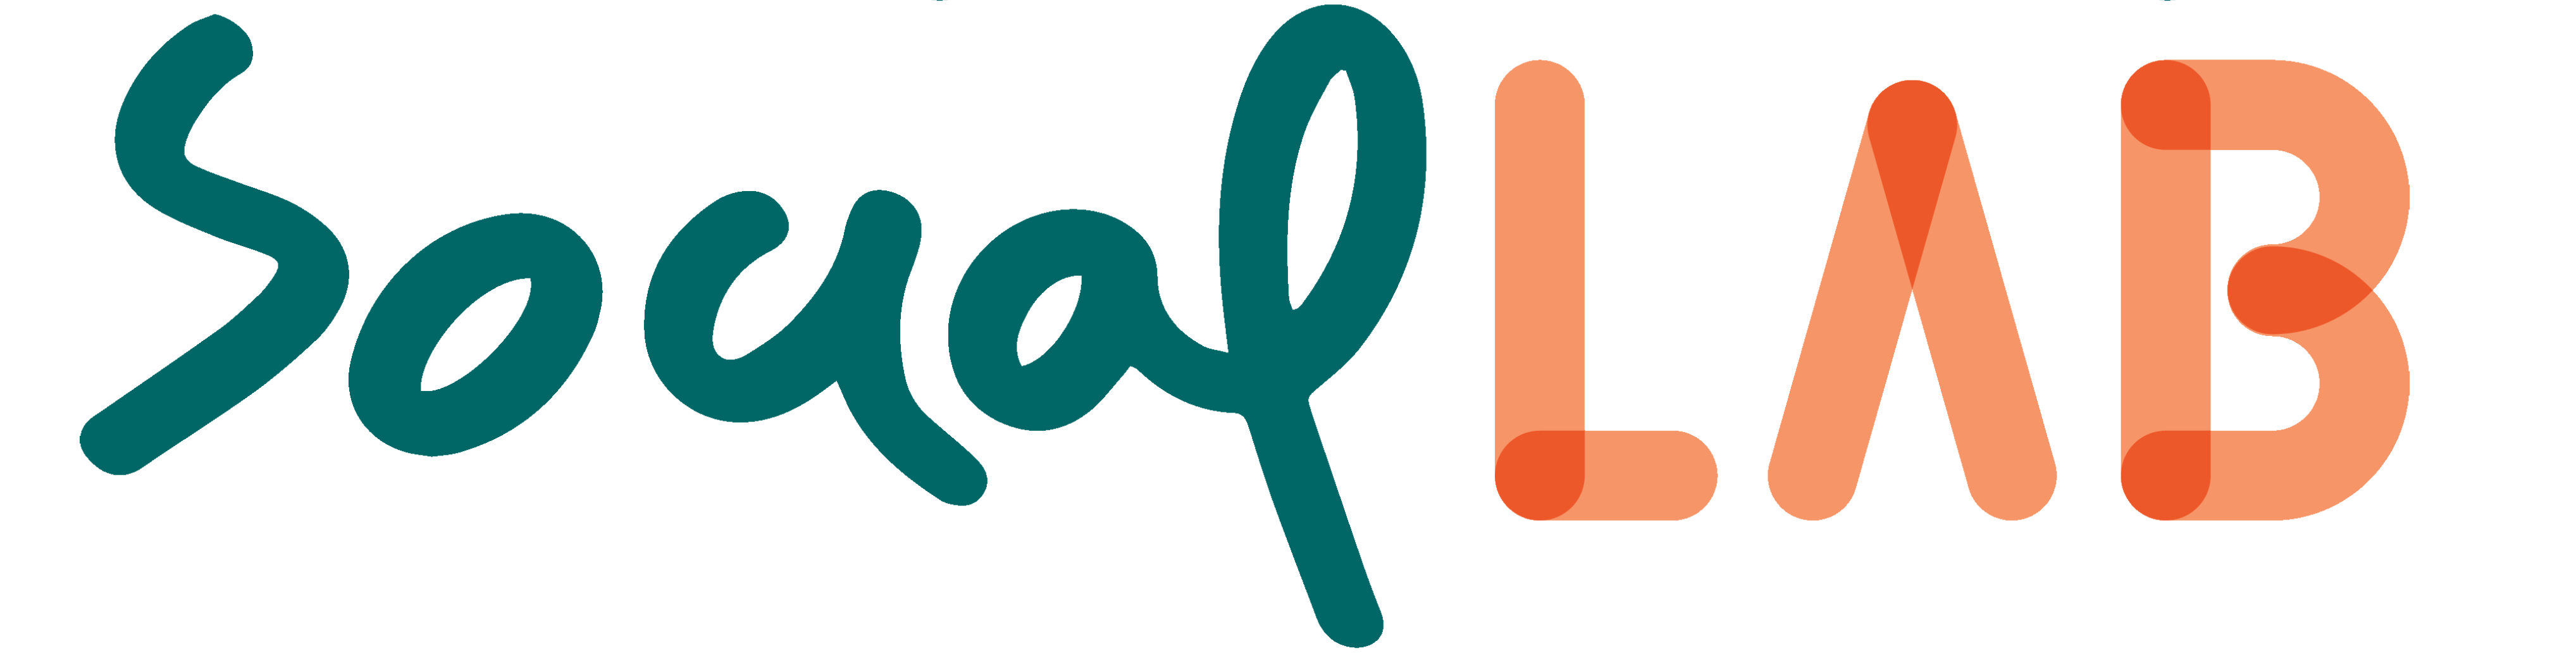 SocialLab Logo 1